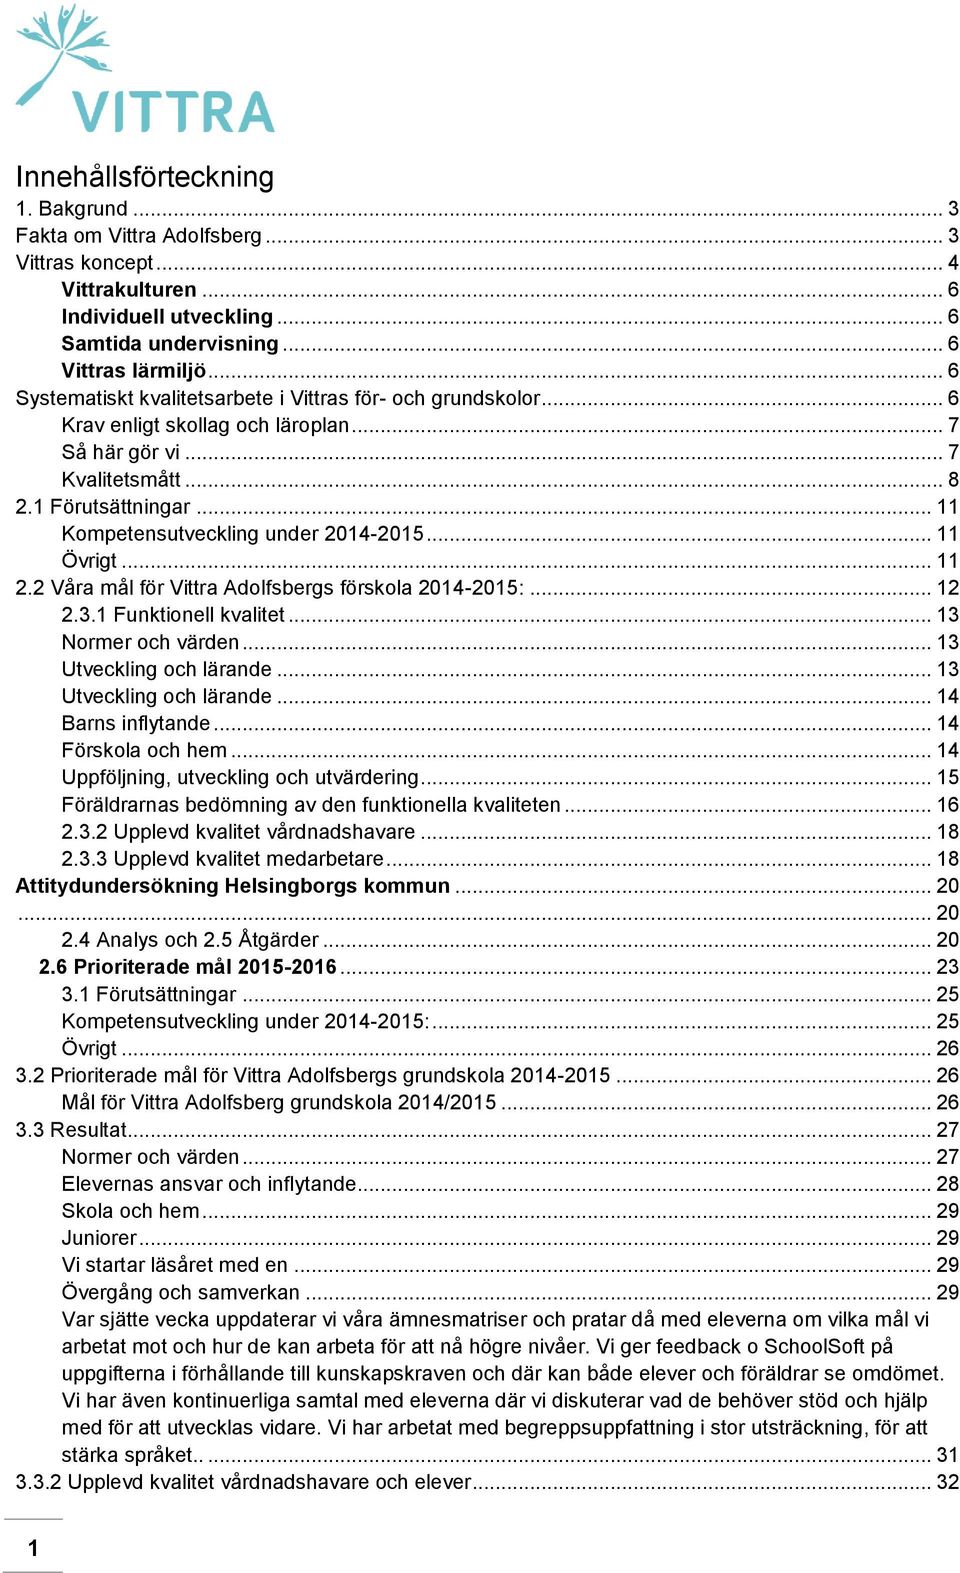 .. 11 Kompetensutveckling under 2014-2015... 11 Övrigt... 11 2.2 Våra mål för Vittra Adolfsbergs förskola 2014-2015:... 12 2.3.1 Funktionell kvalitet... 13 Normer och värden.